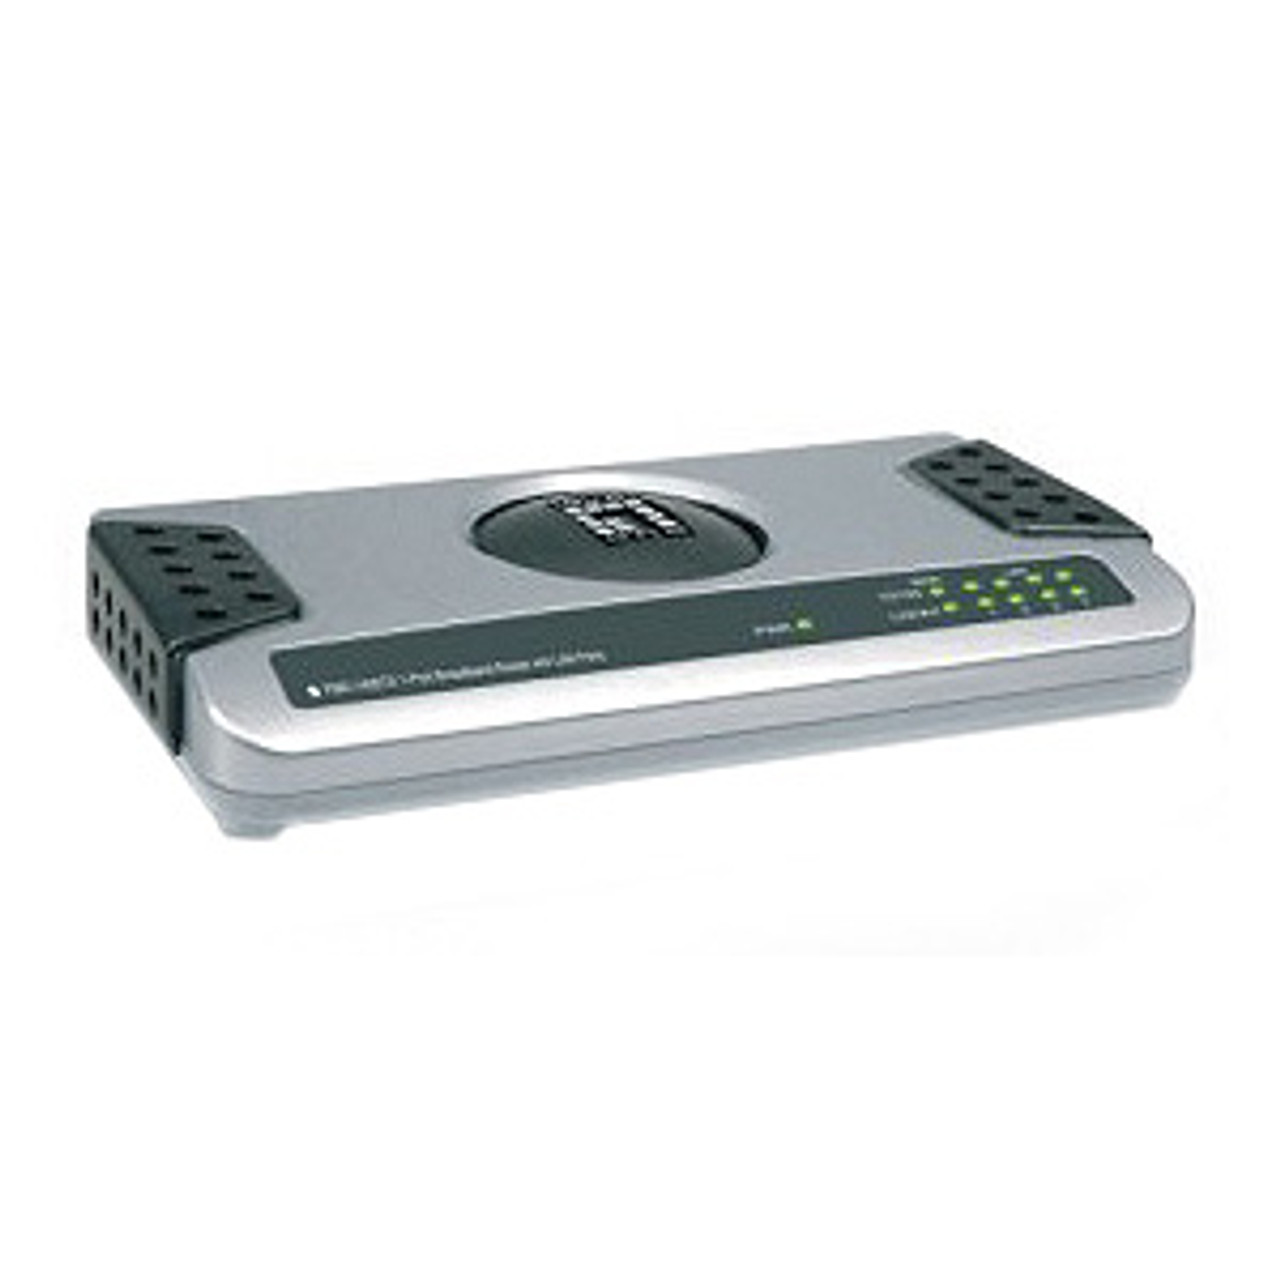 FBR-1405TX LevelOne Broadband Router with 4 LAN Ports 1 x 10/100Base-TX WAN, 4 x 10/100Base-TX LAN (Refurbished)